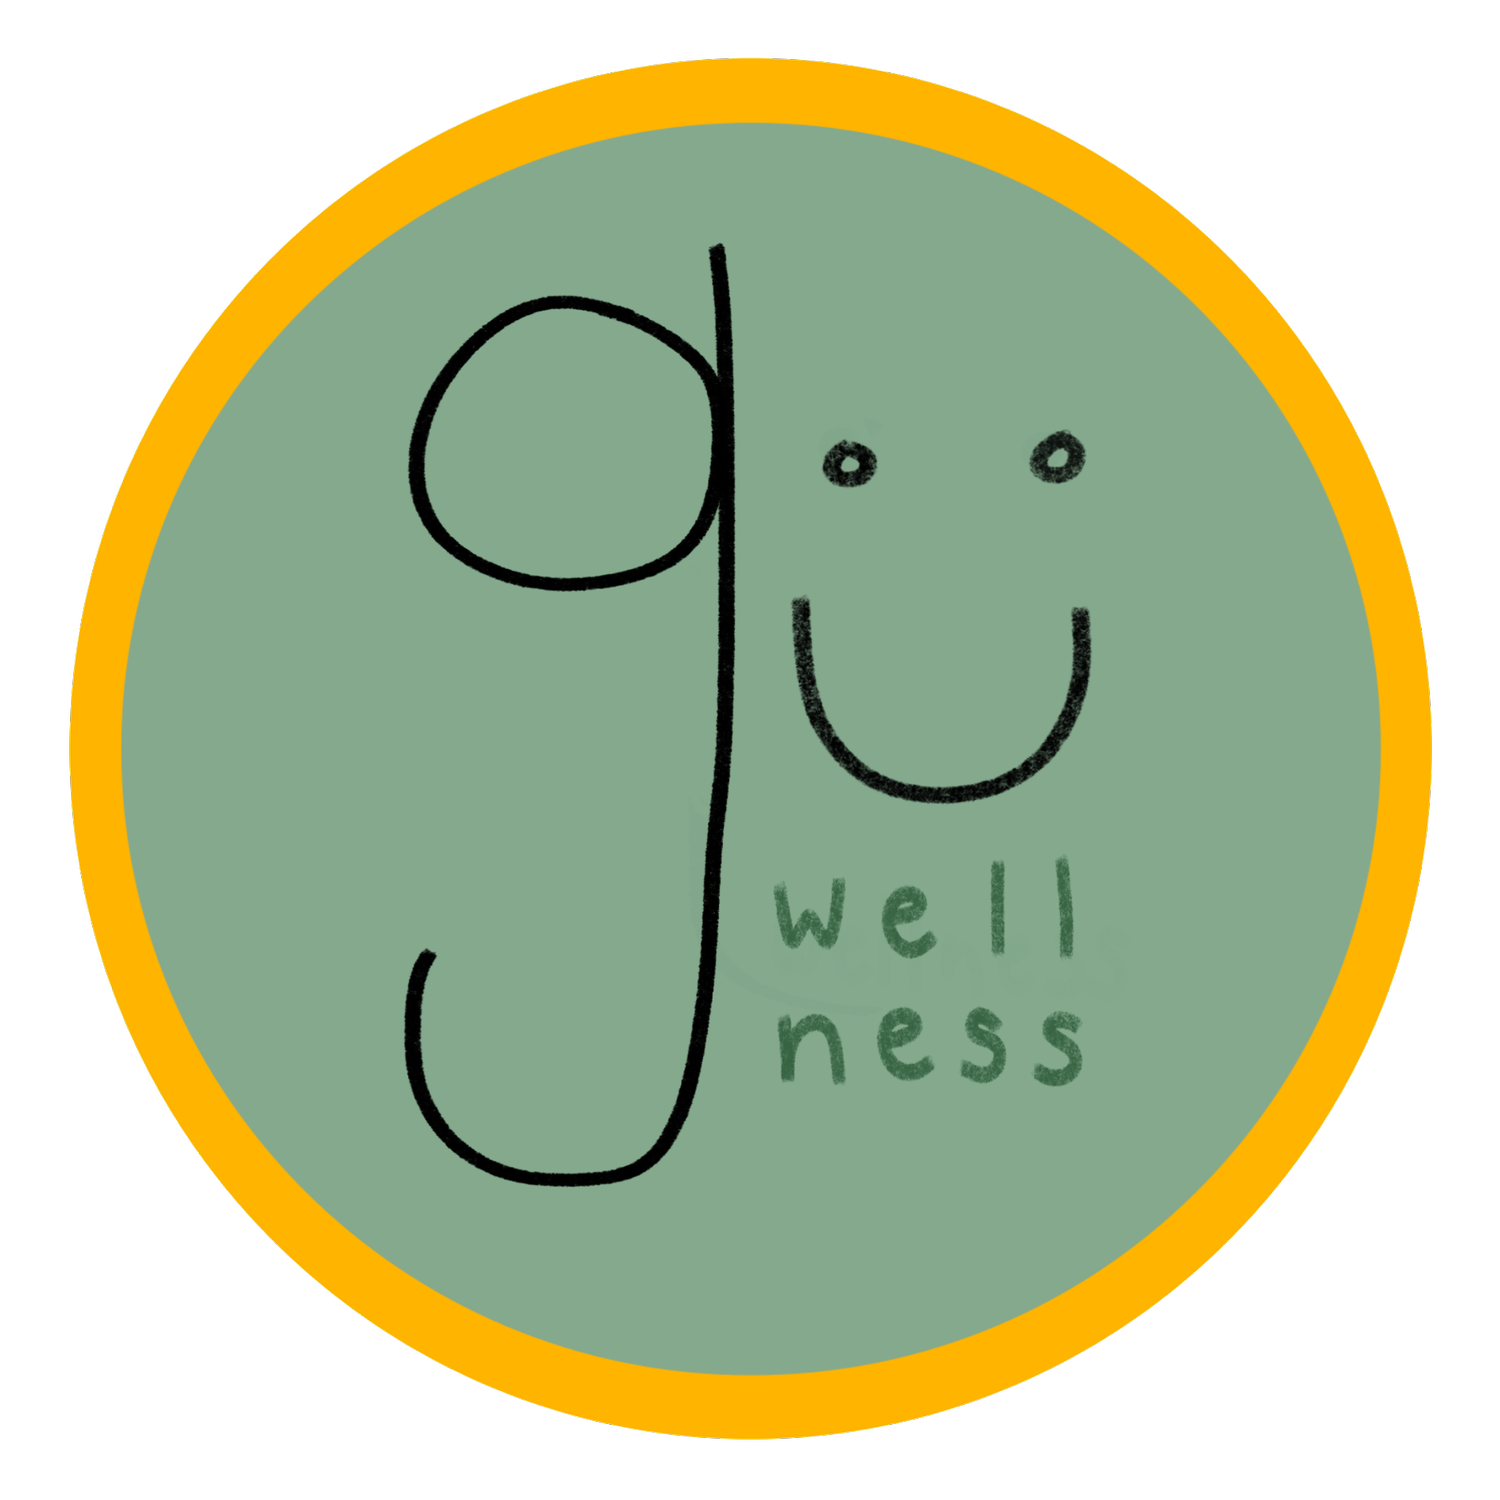 gu wellness counseling, llc